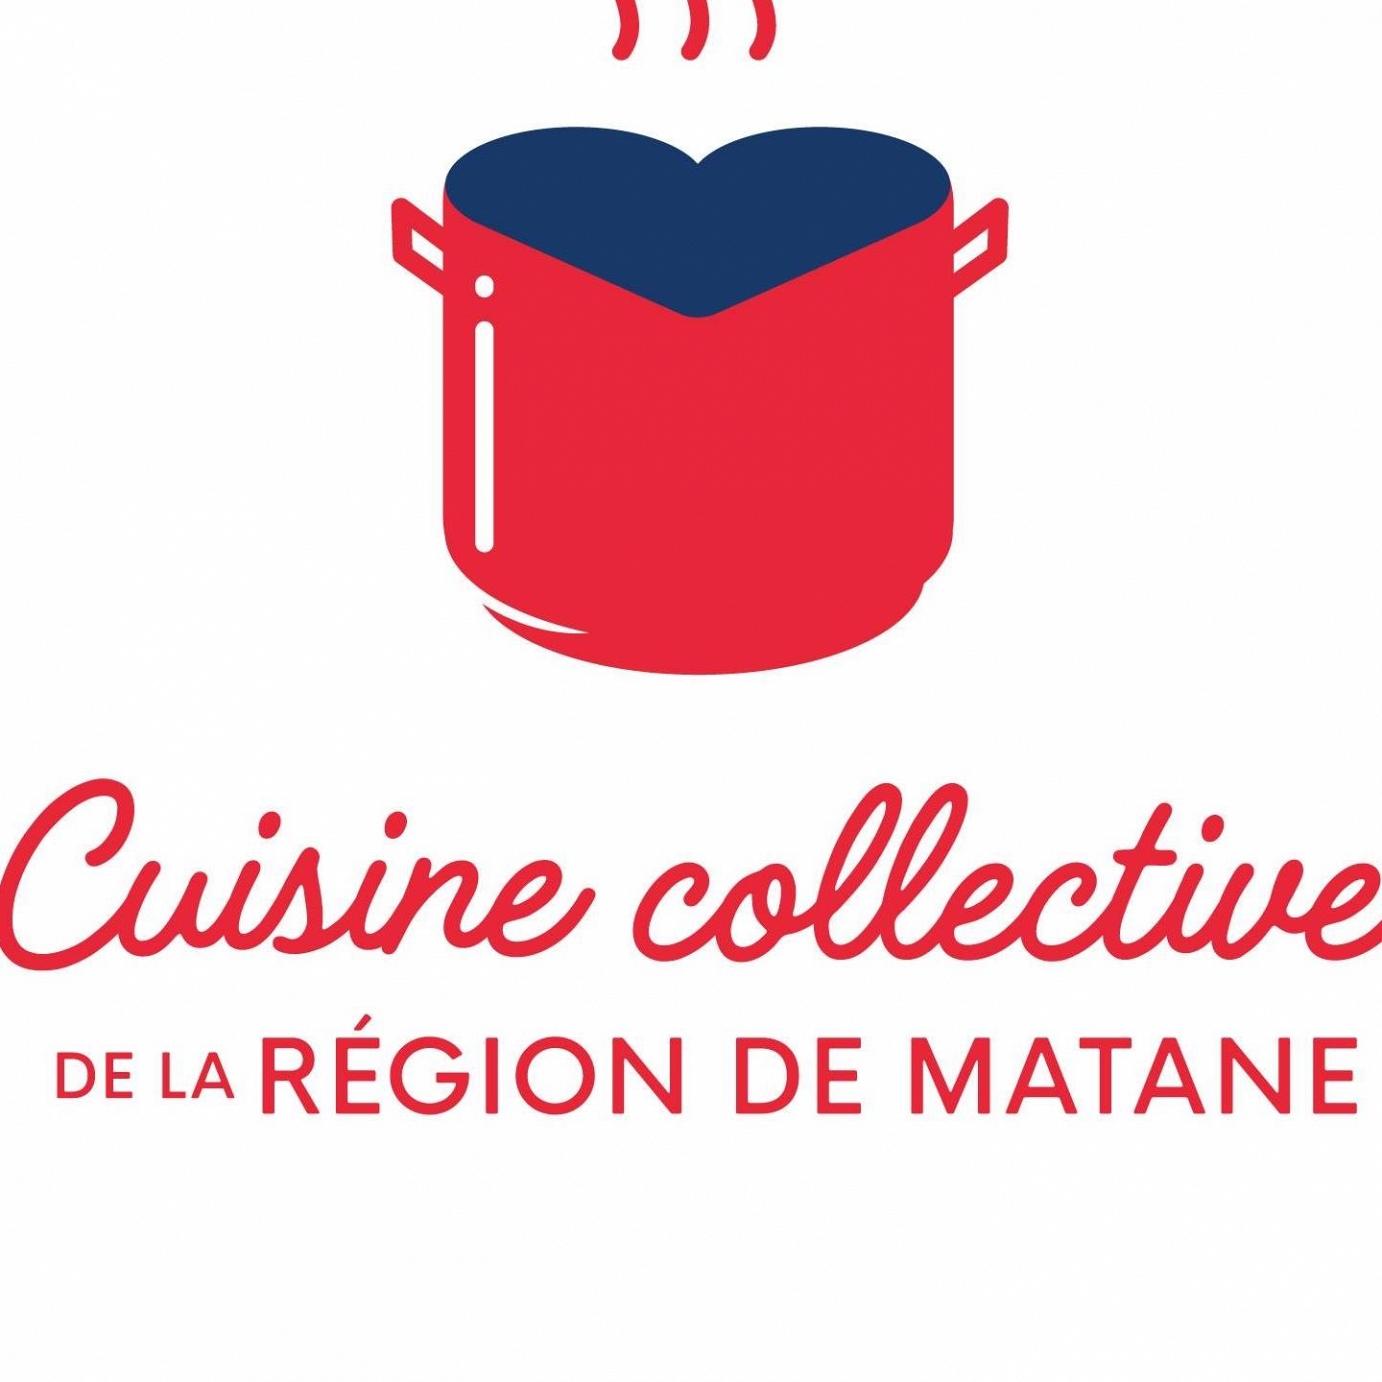 Résultats de recherche Résultats Web  La Cuisine collective de la région de Matane